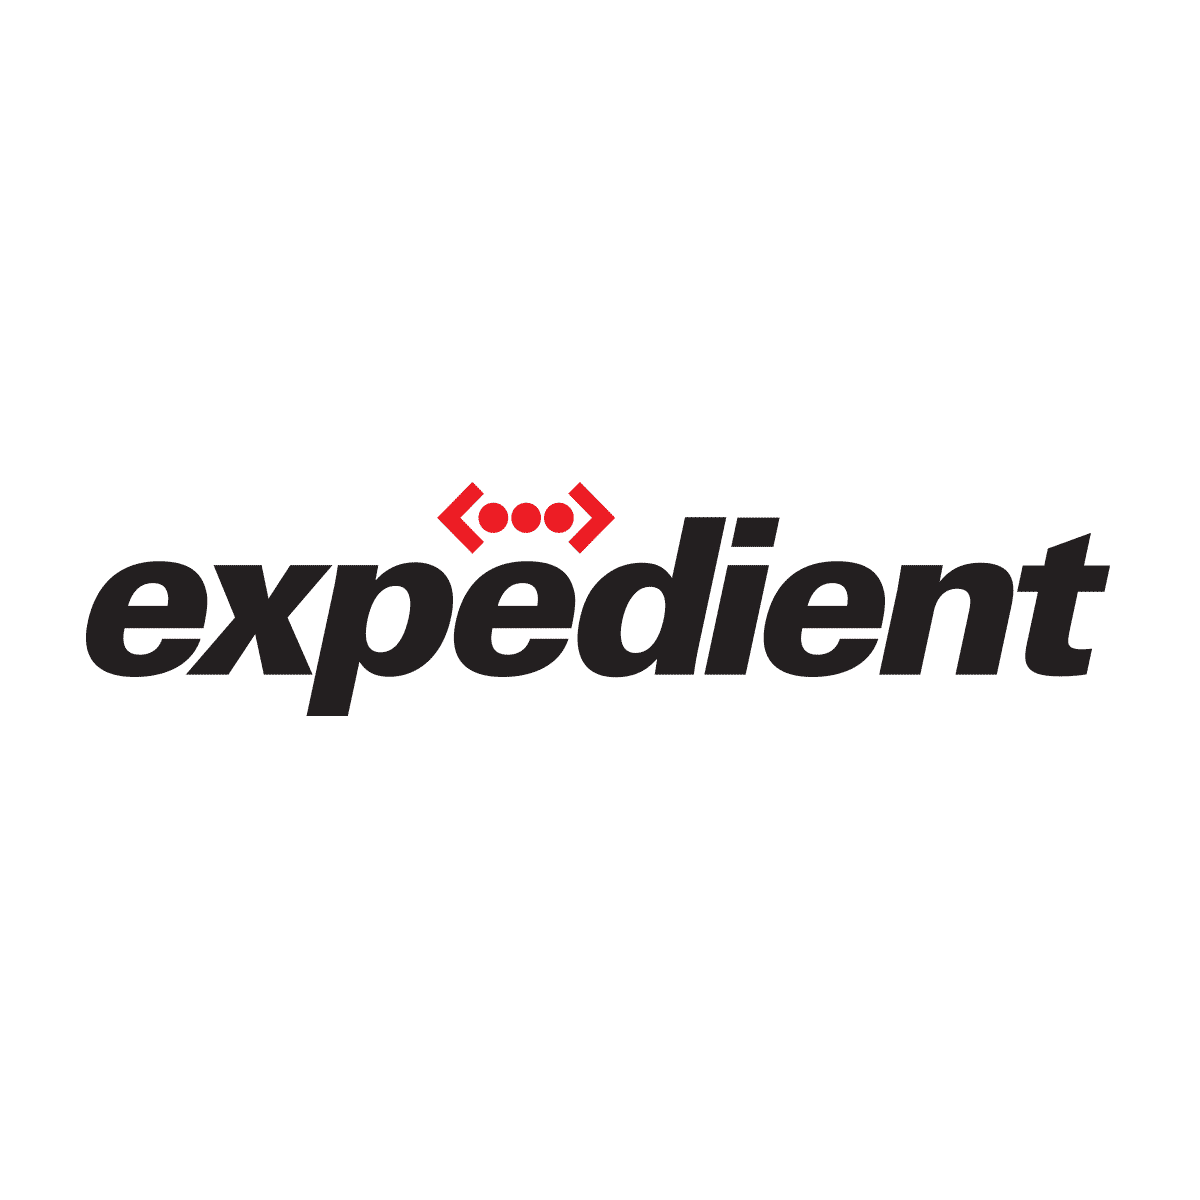 (c) Expedient.com